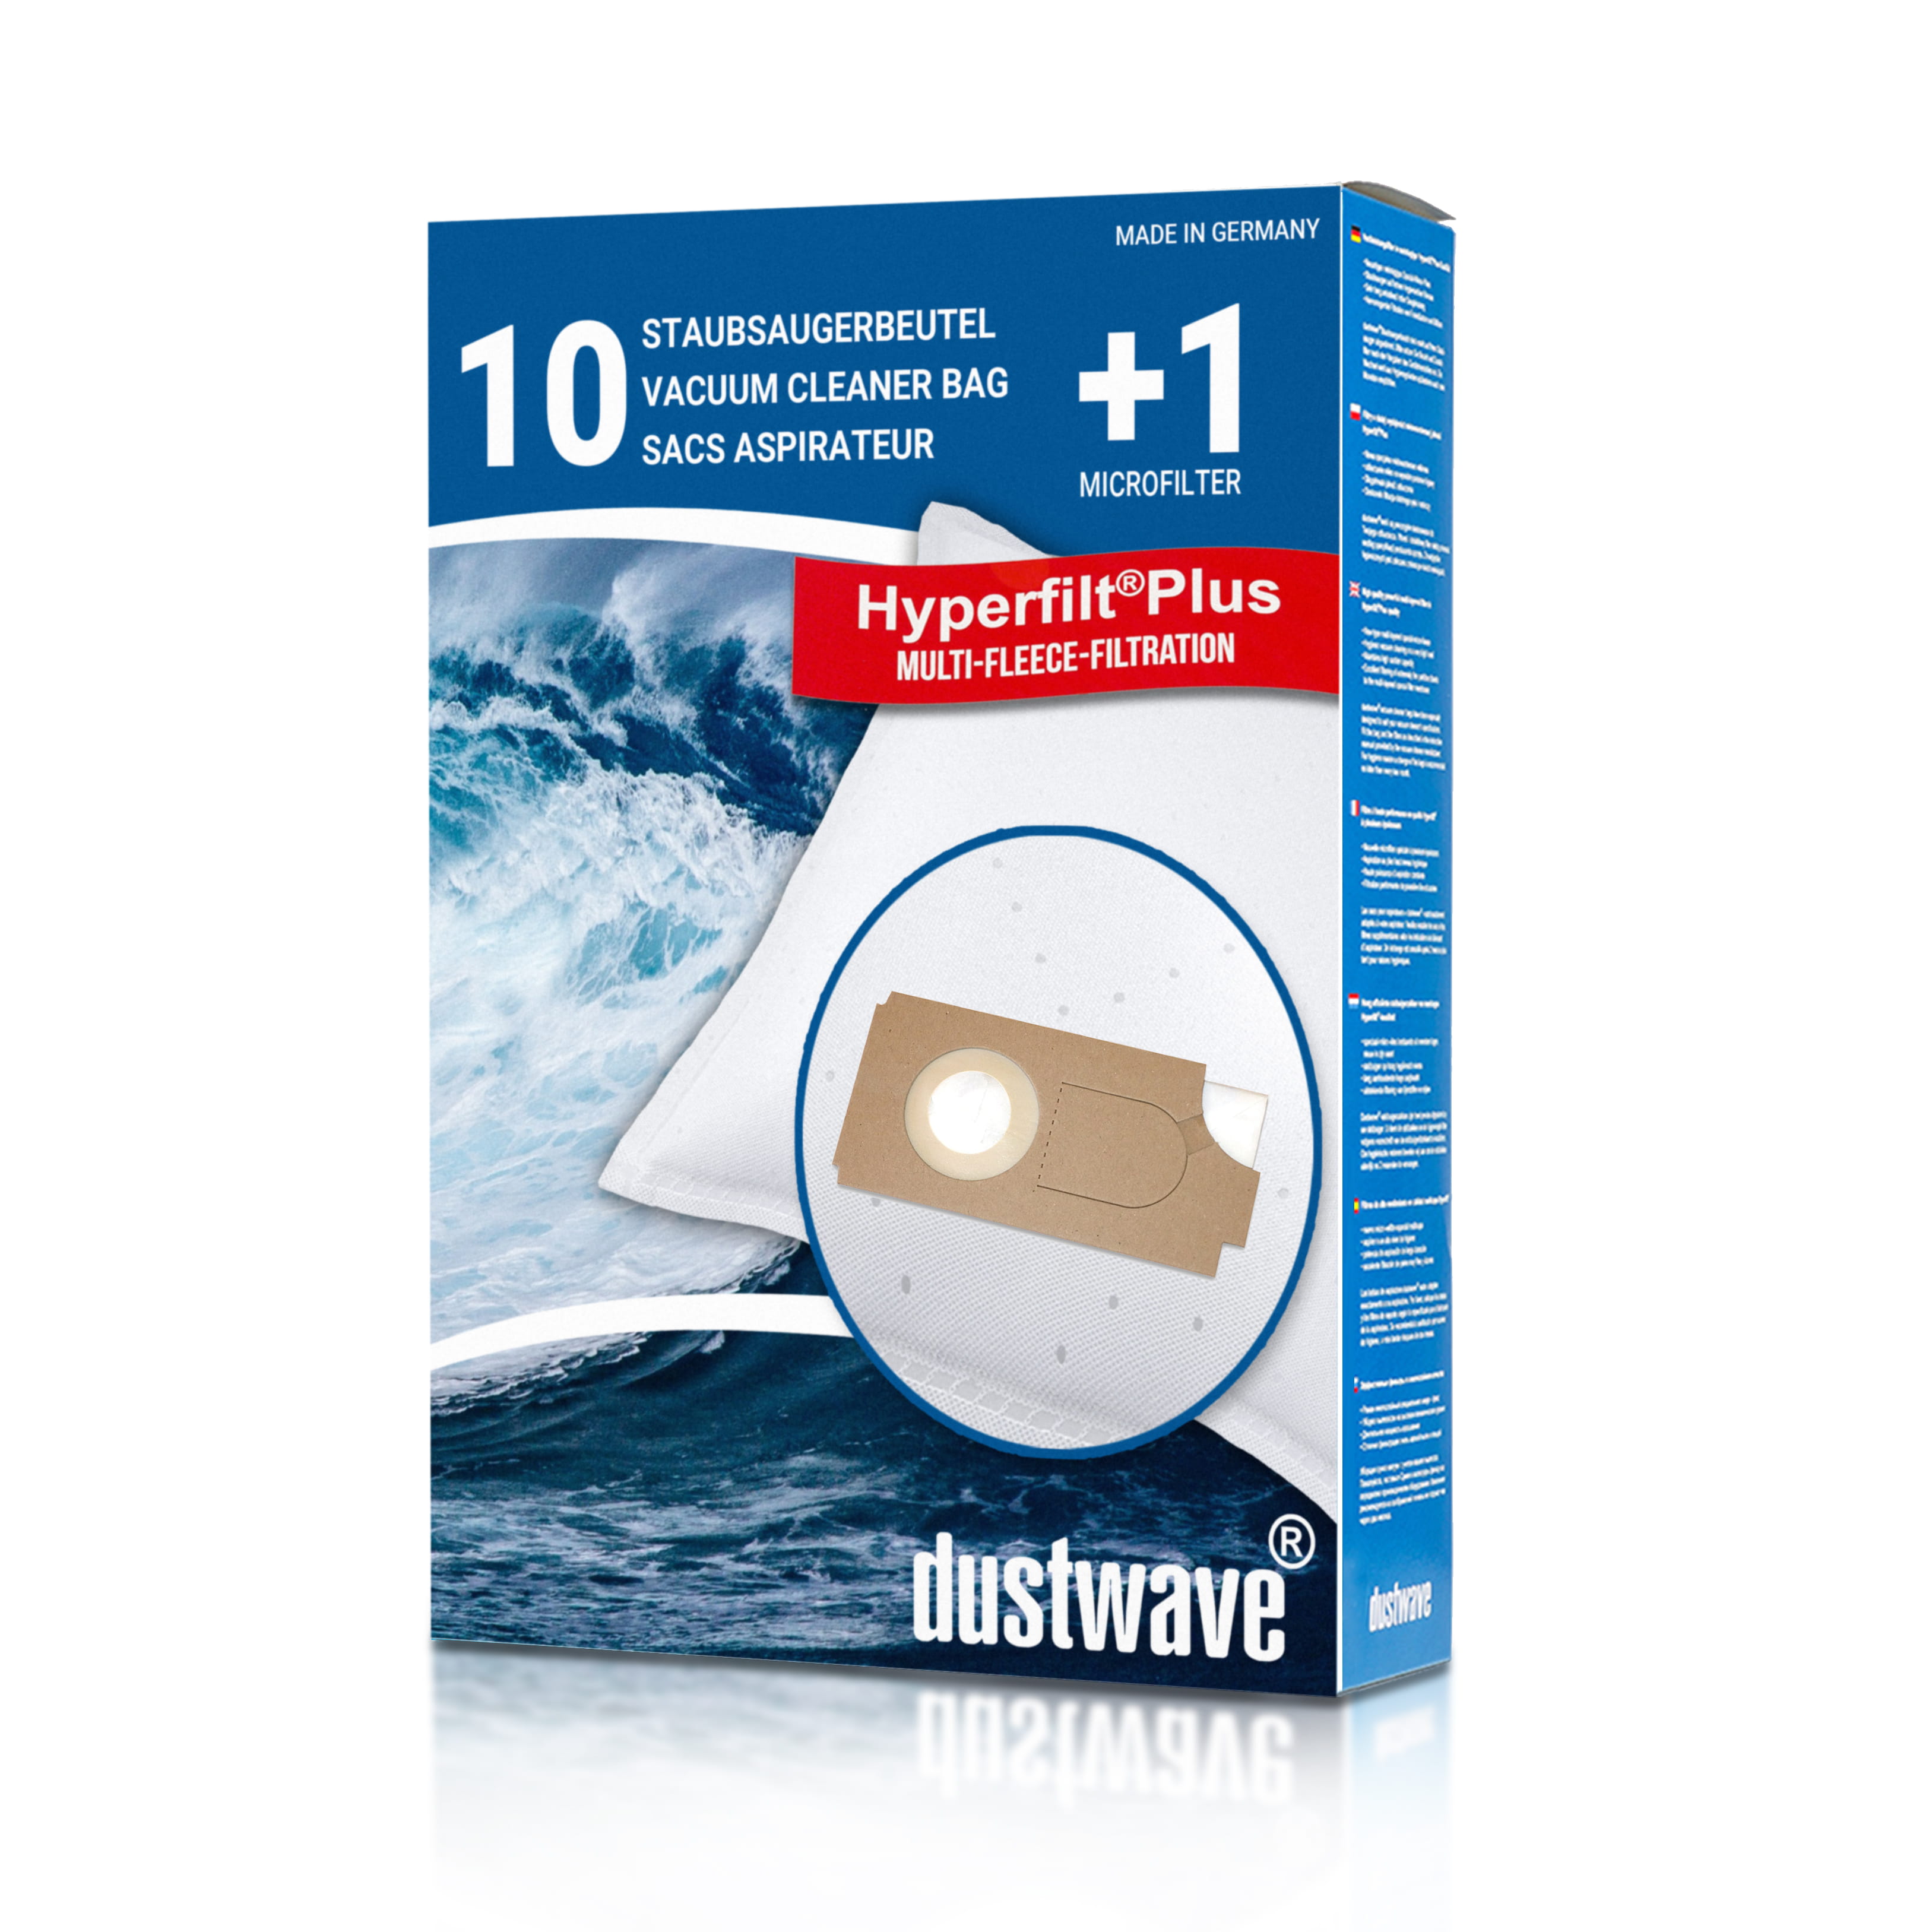 Dustwave® 10 Staubsaugerbeutel für Columbus 26 - hocheffizient mit Hygieneverschluss - Made in Germany